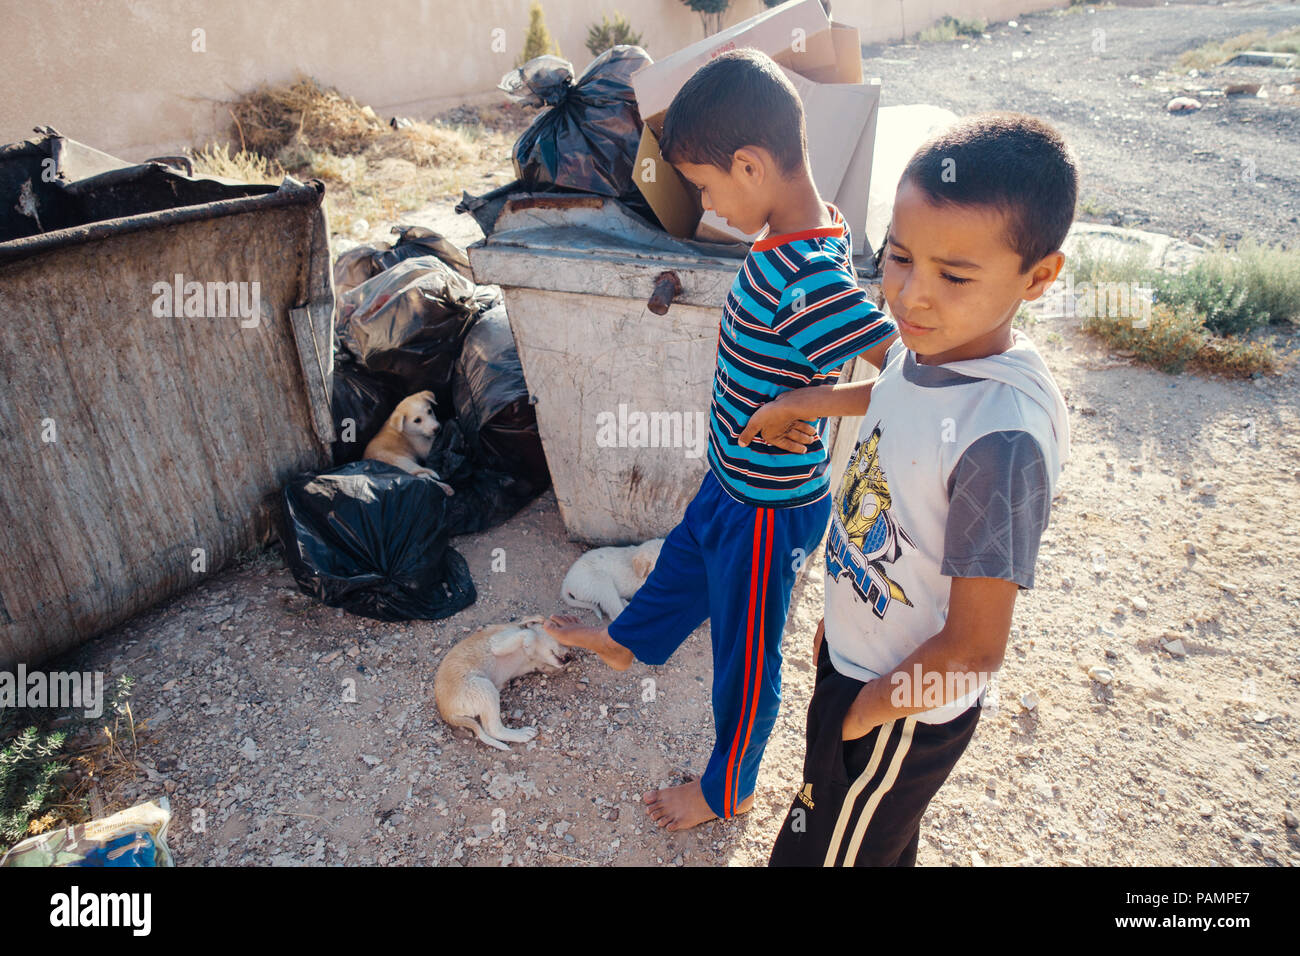 Zwei jungen jordanischen Jungen kick Welpen liegen in einem Müllcontainer an einem heißen Tag in Jordanien Stockfoto